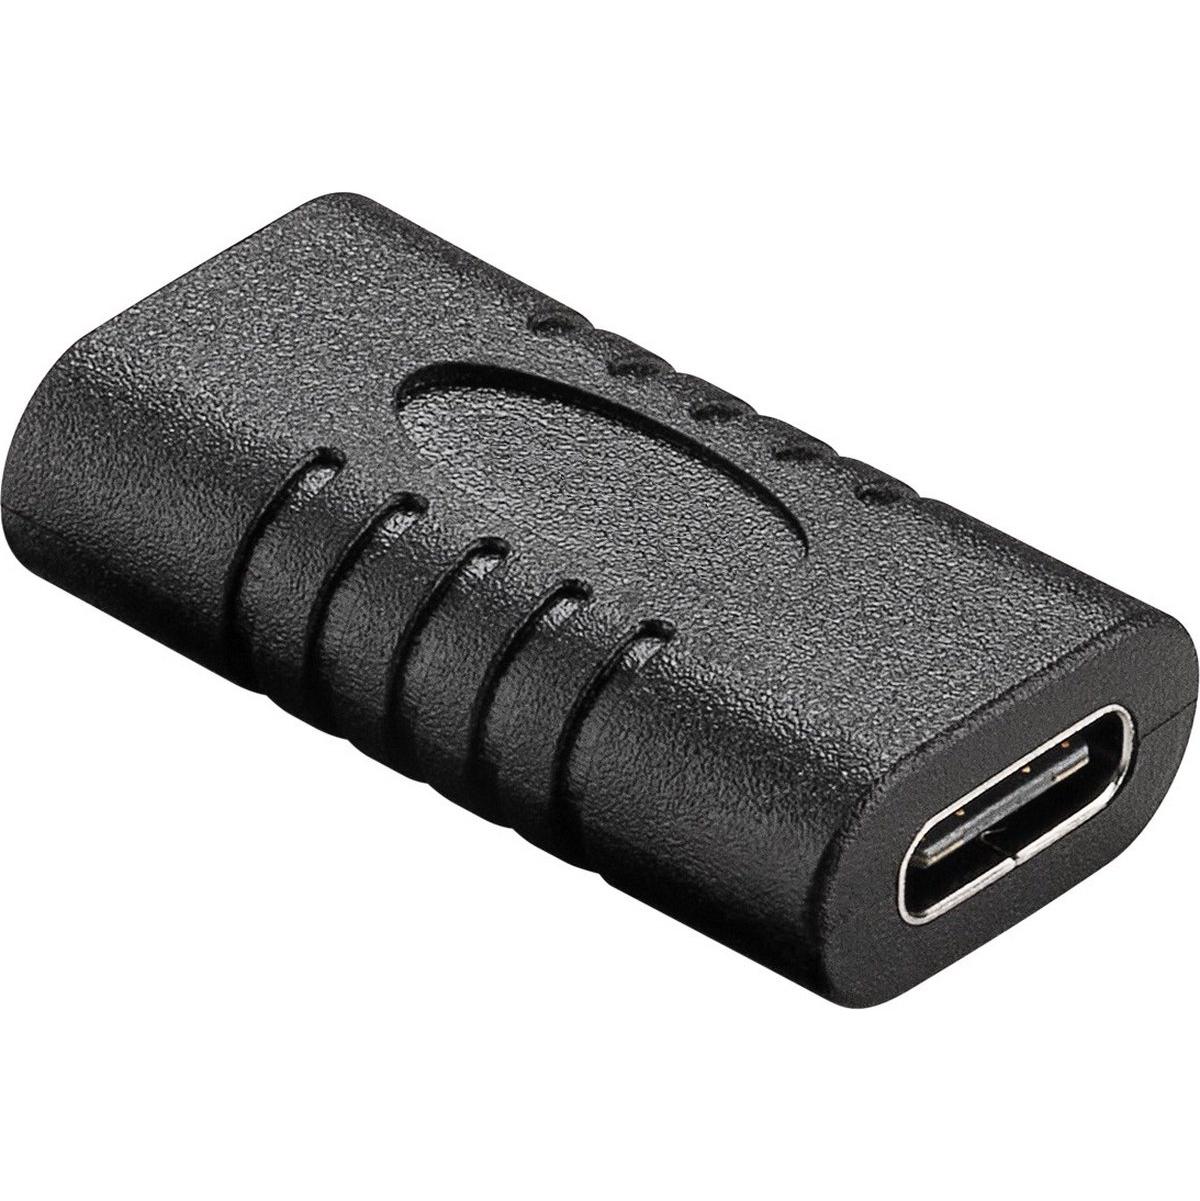 USB C verloopstekker - Goobay